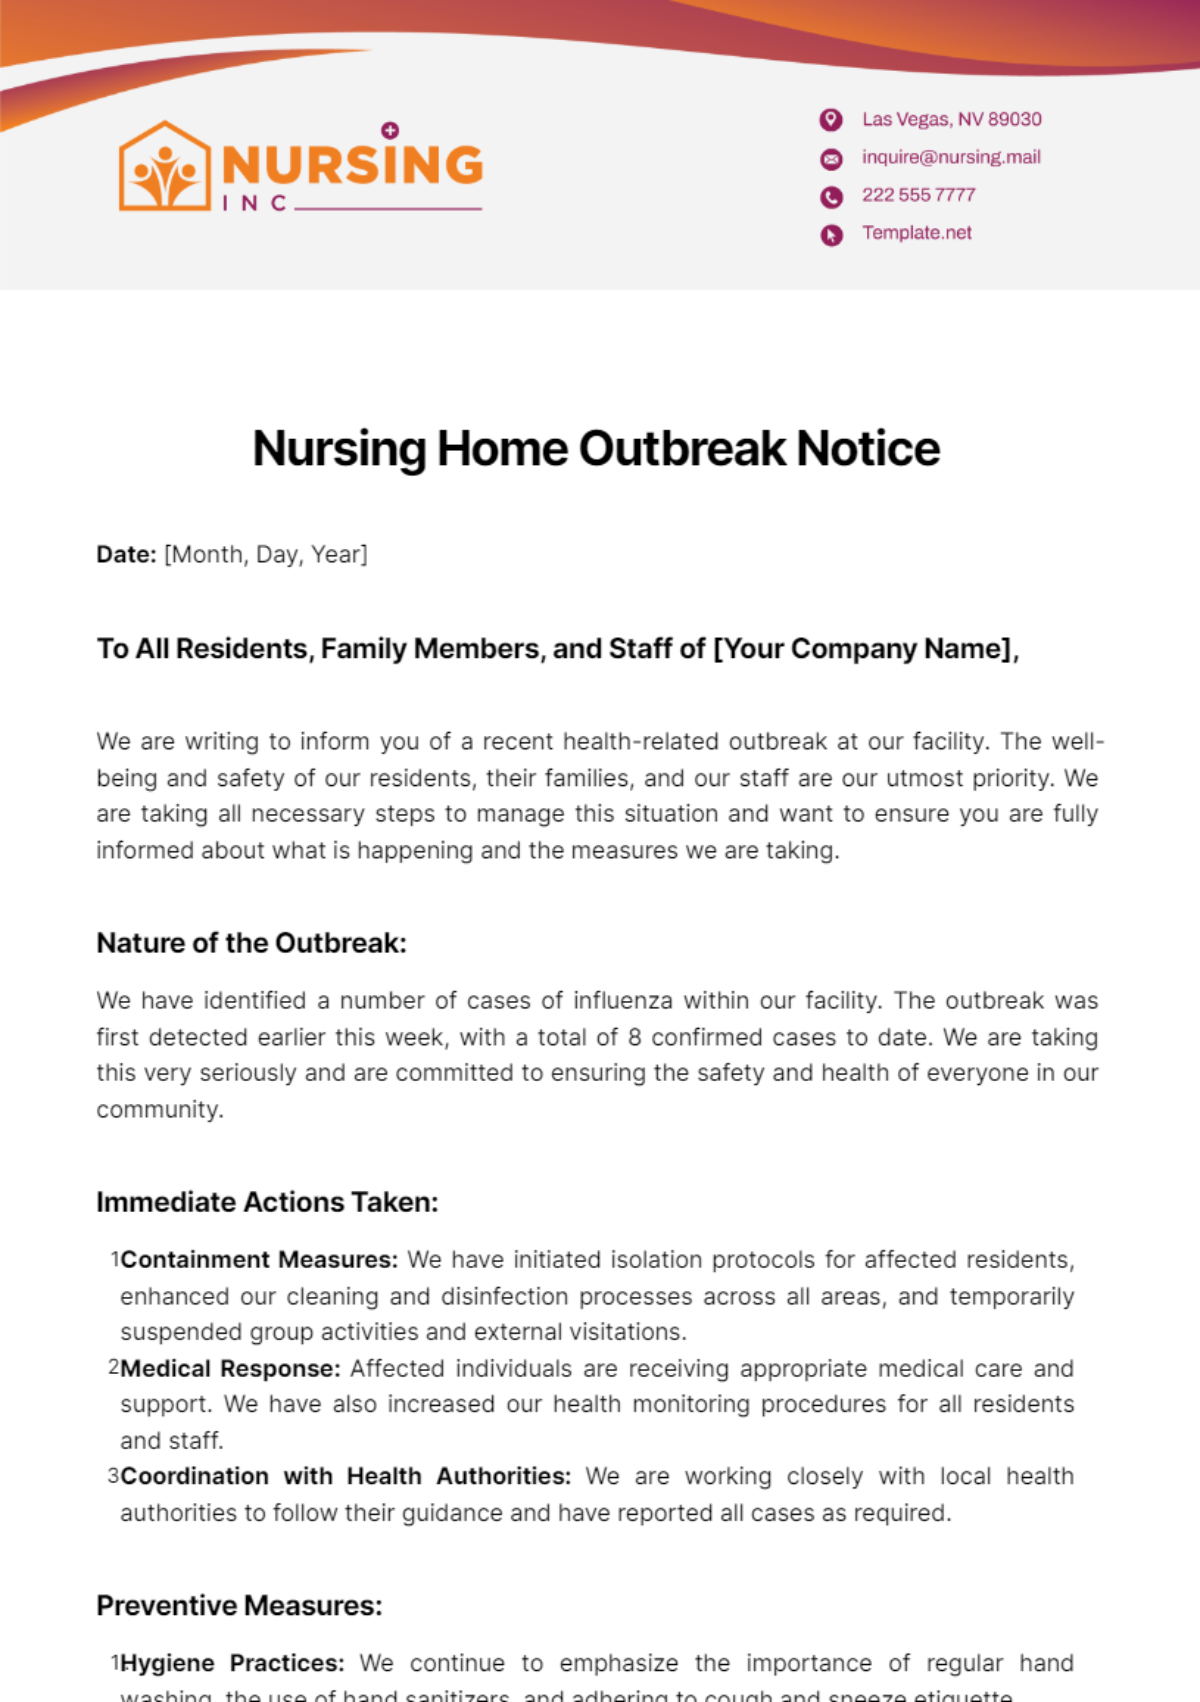 Nursing Home Outbreak Notice Template